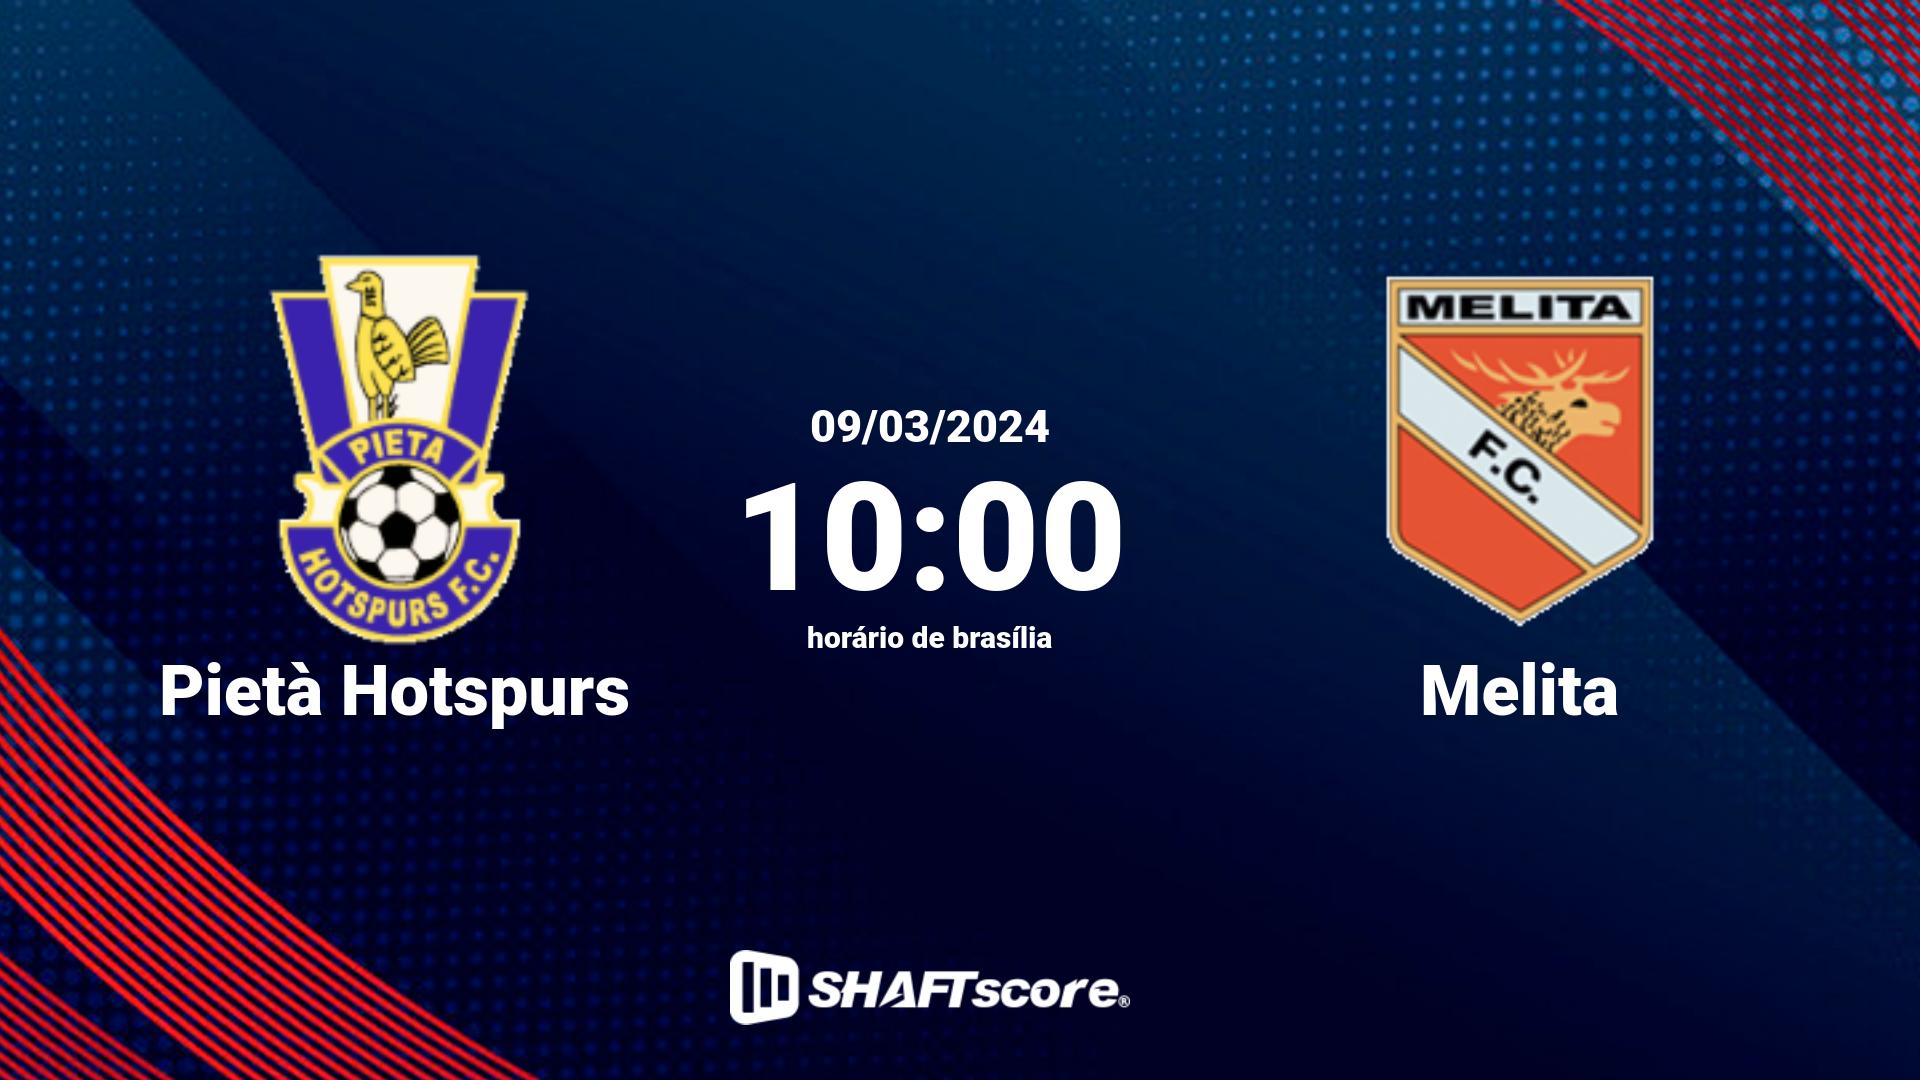 Estatísticas do jogo Pietà Hotspurs vs Melita 09.03 10:00